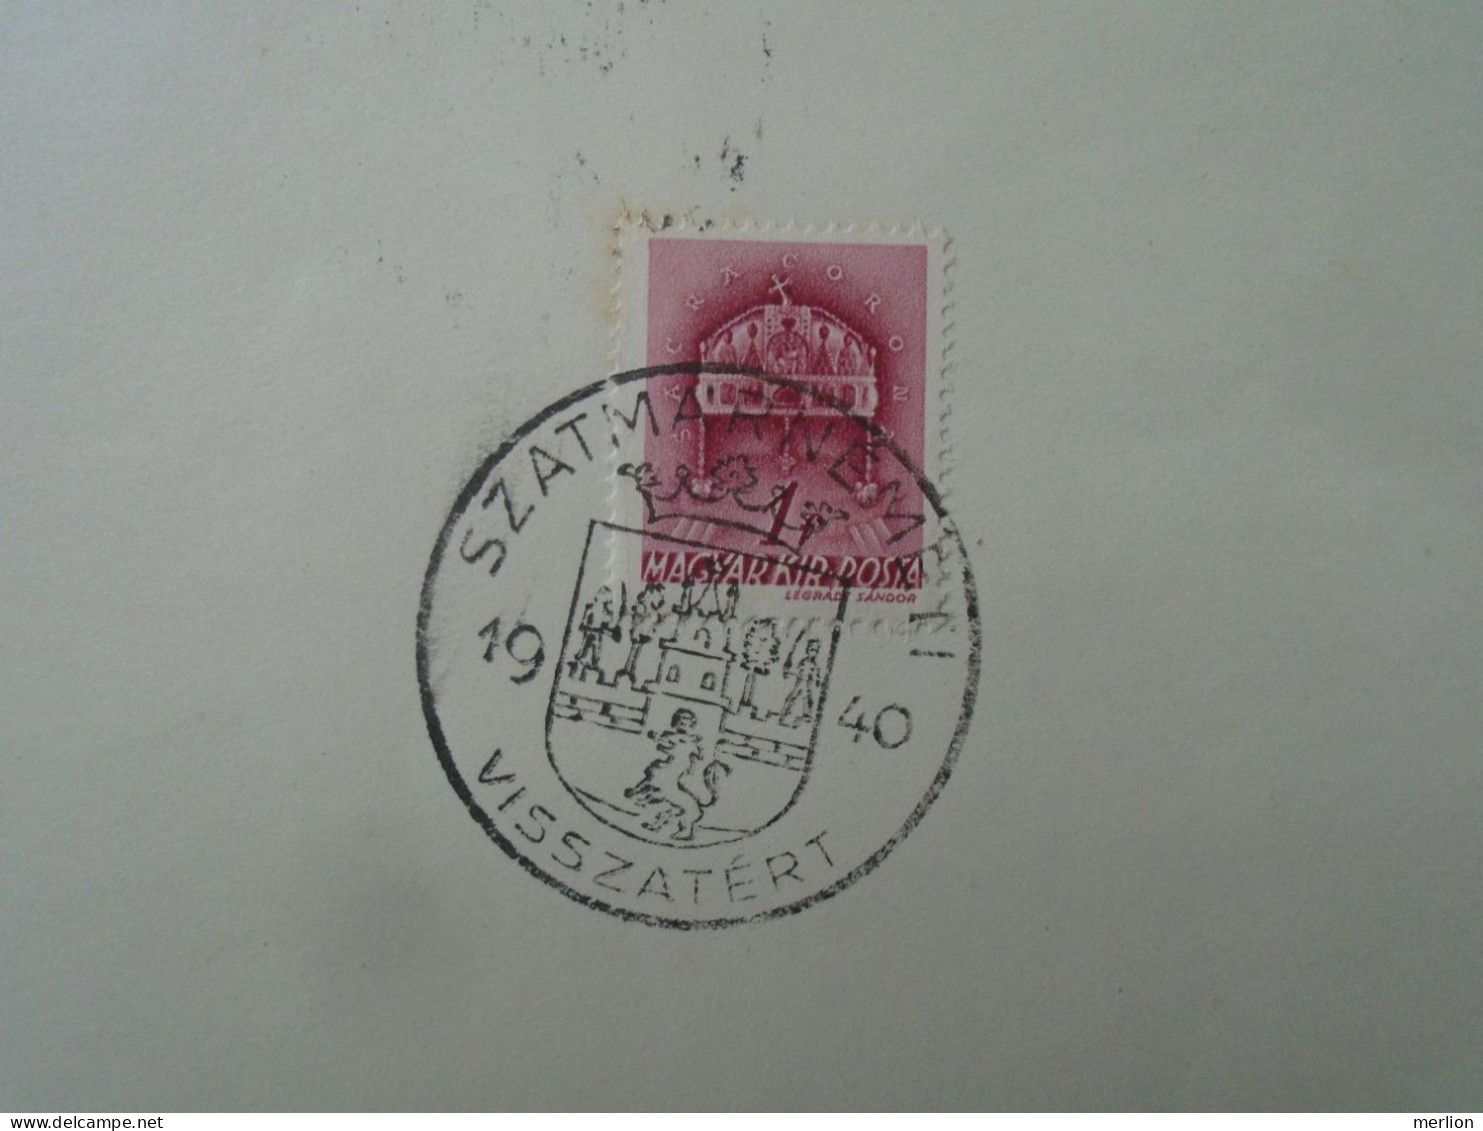 ZA451.17 Hungary  - Nagybánya, Szatmárnémeti, Nagyszalonta, Nagyvárad Visszatért -Commemorative Postmark 1940 - Postmark Collection